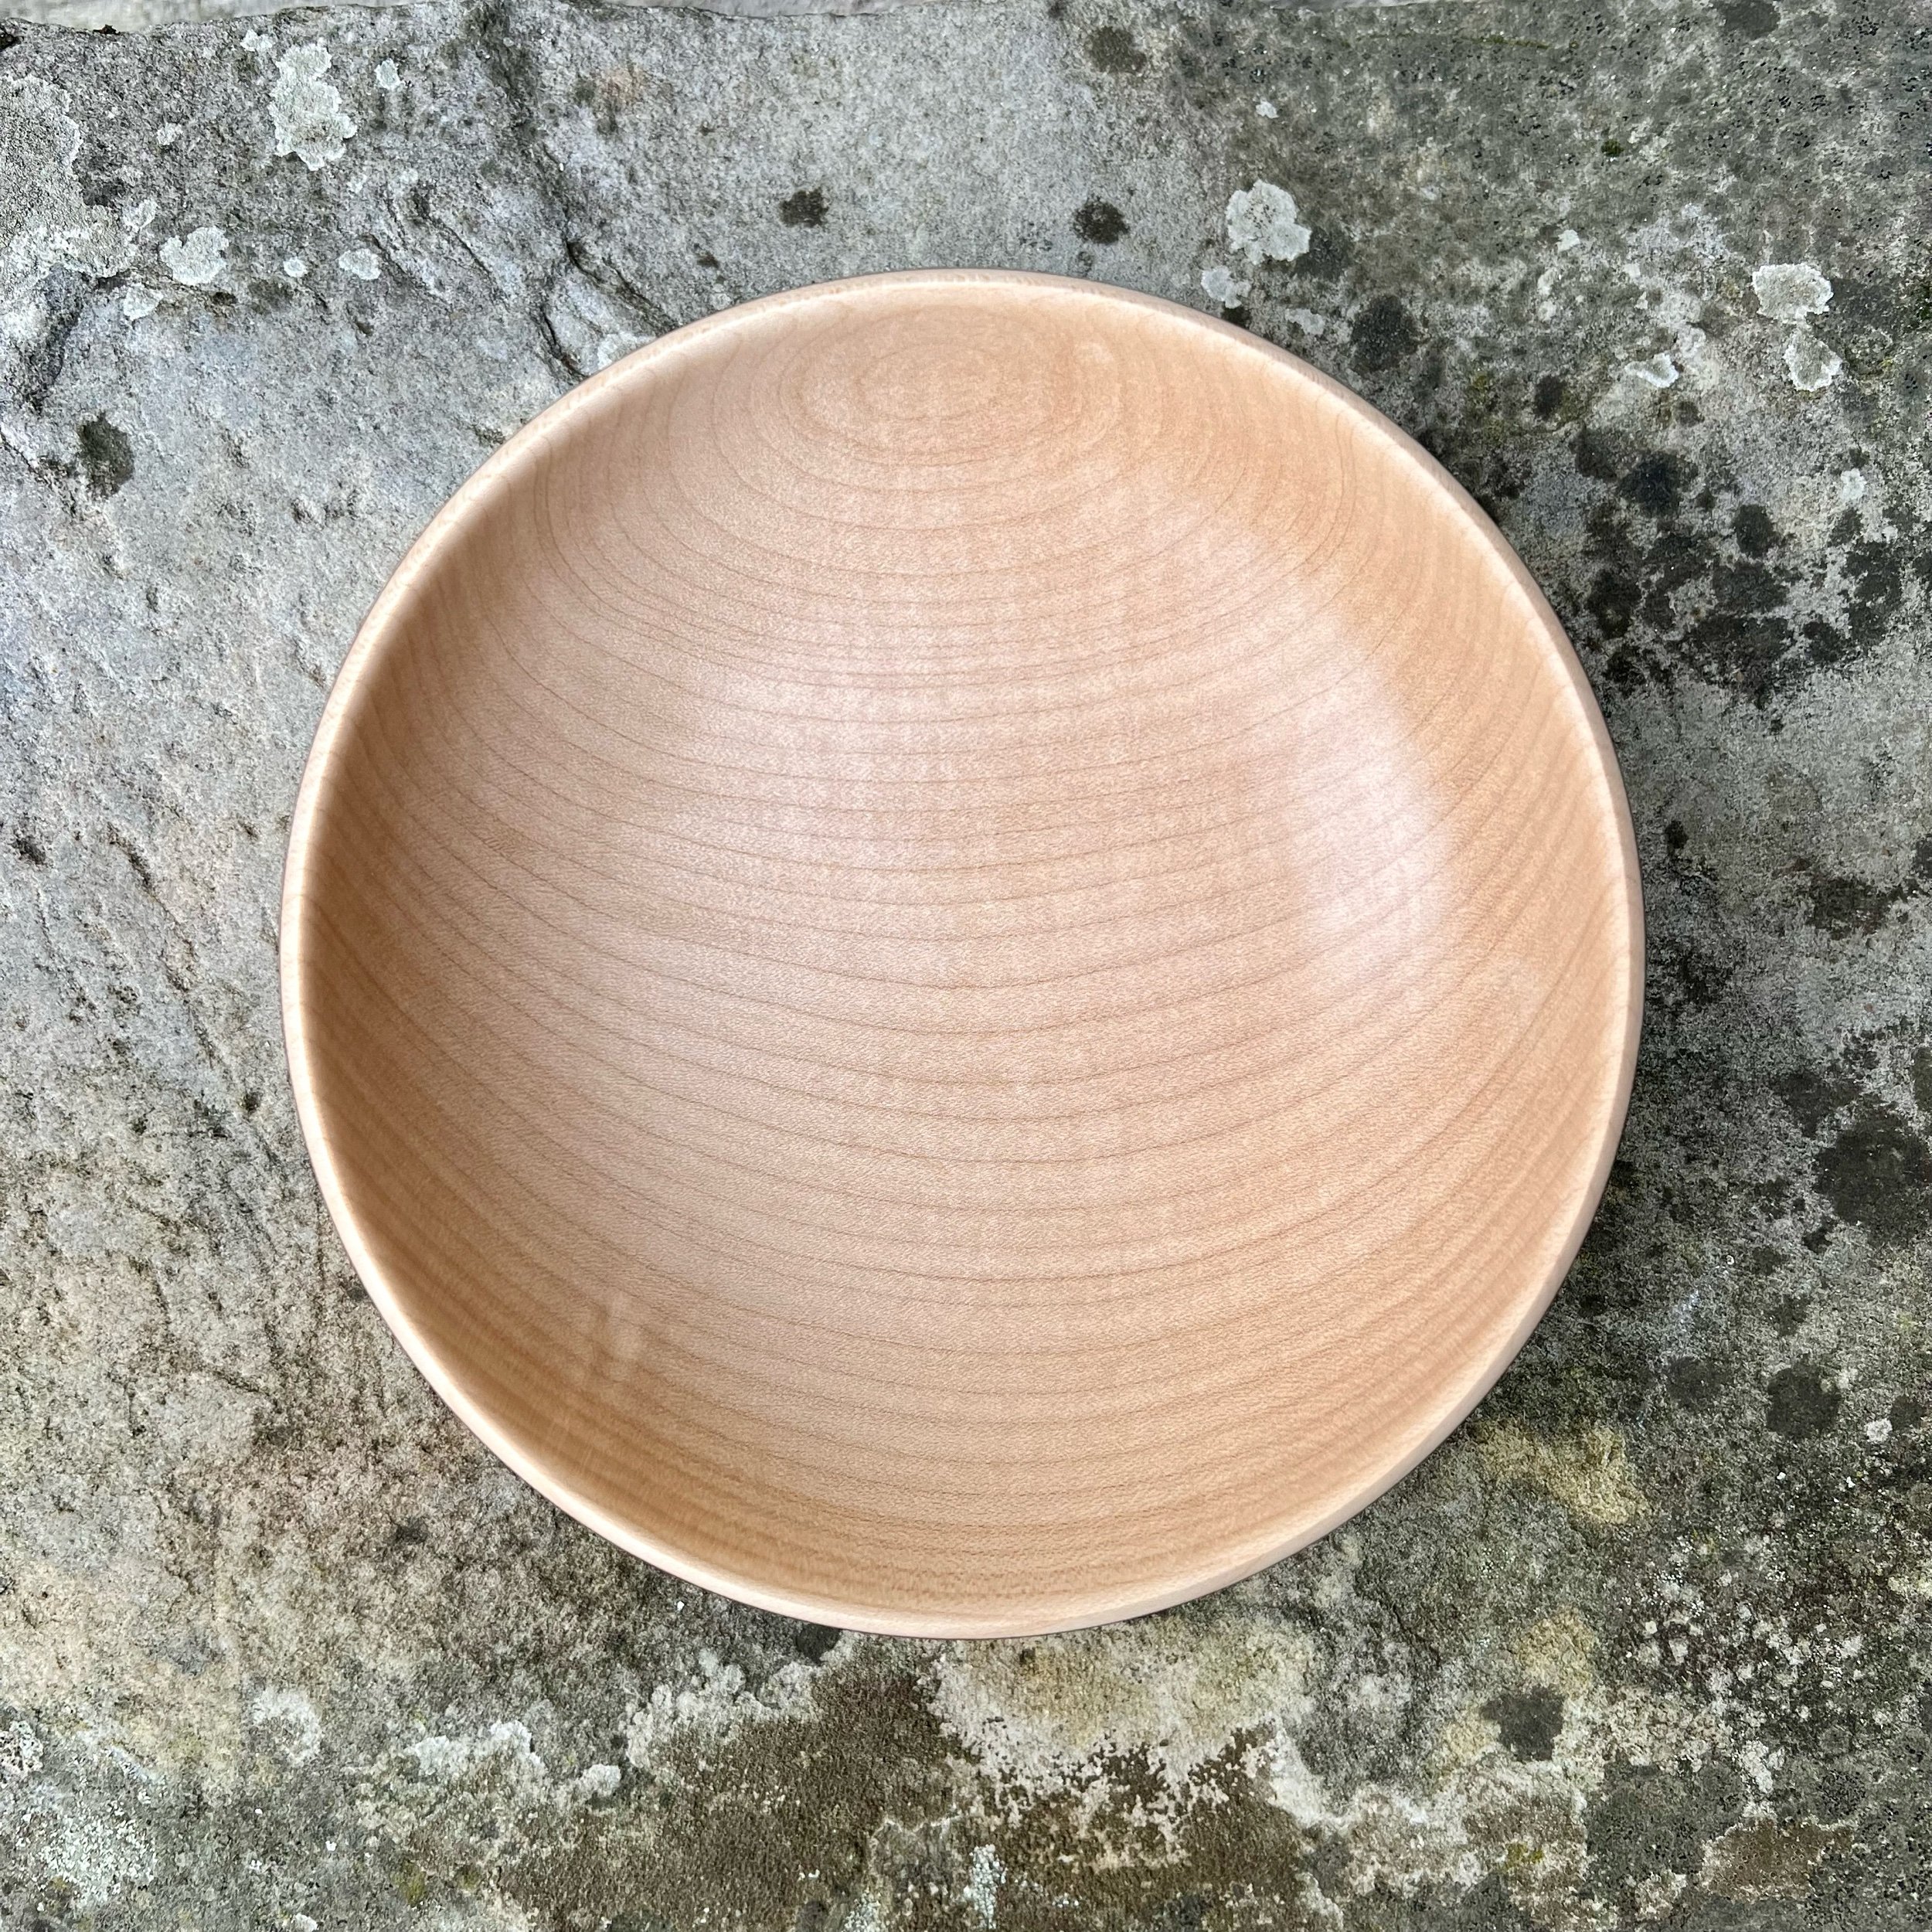 Maple bowl 10II23